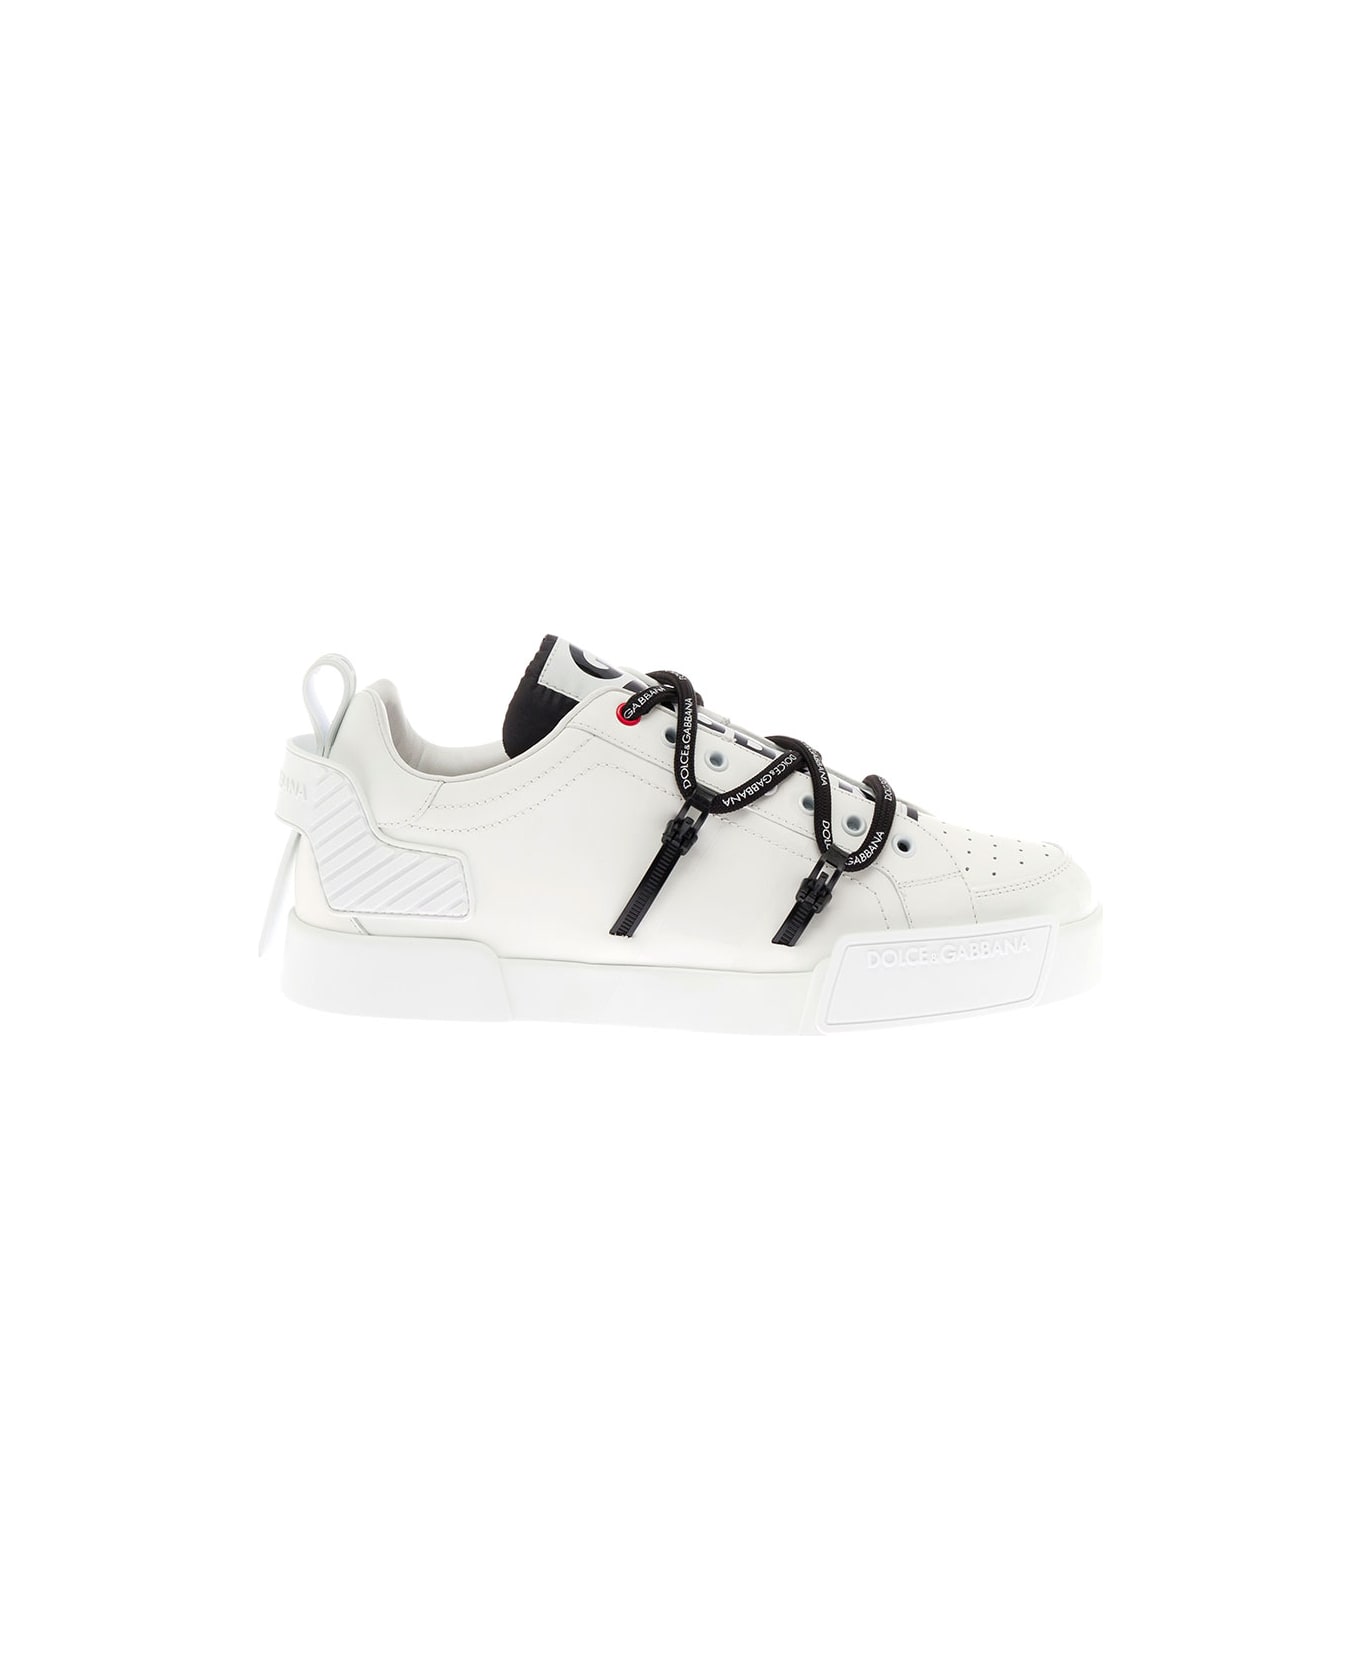 Dolce & Gabbana Man's Portofino White Leather And Patent Sneakers - White/black